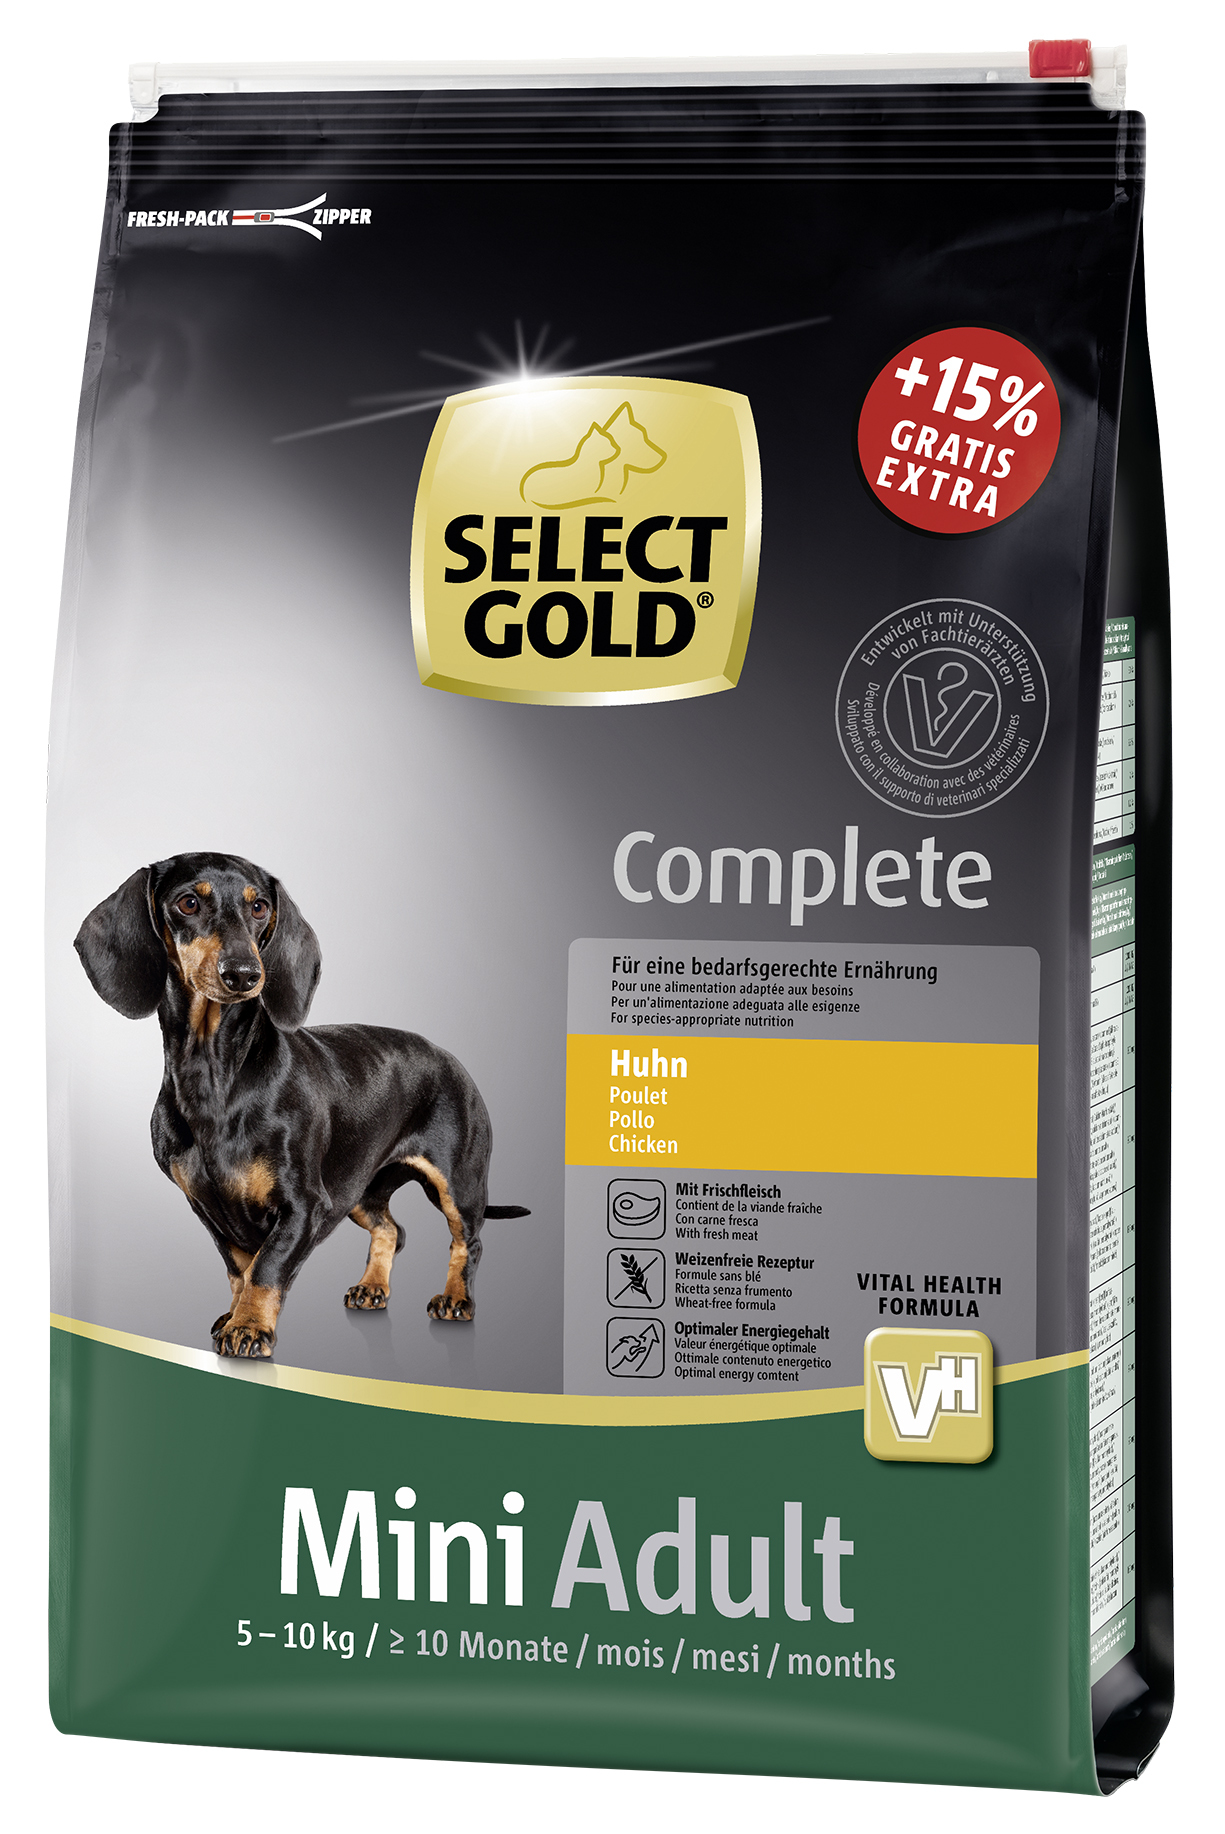 SELECT GOLD Complete Mini Adult Huhn 4kg + 600g gratis